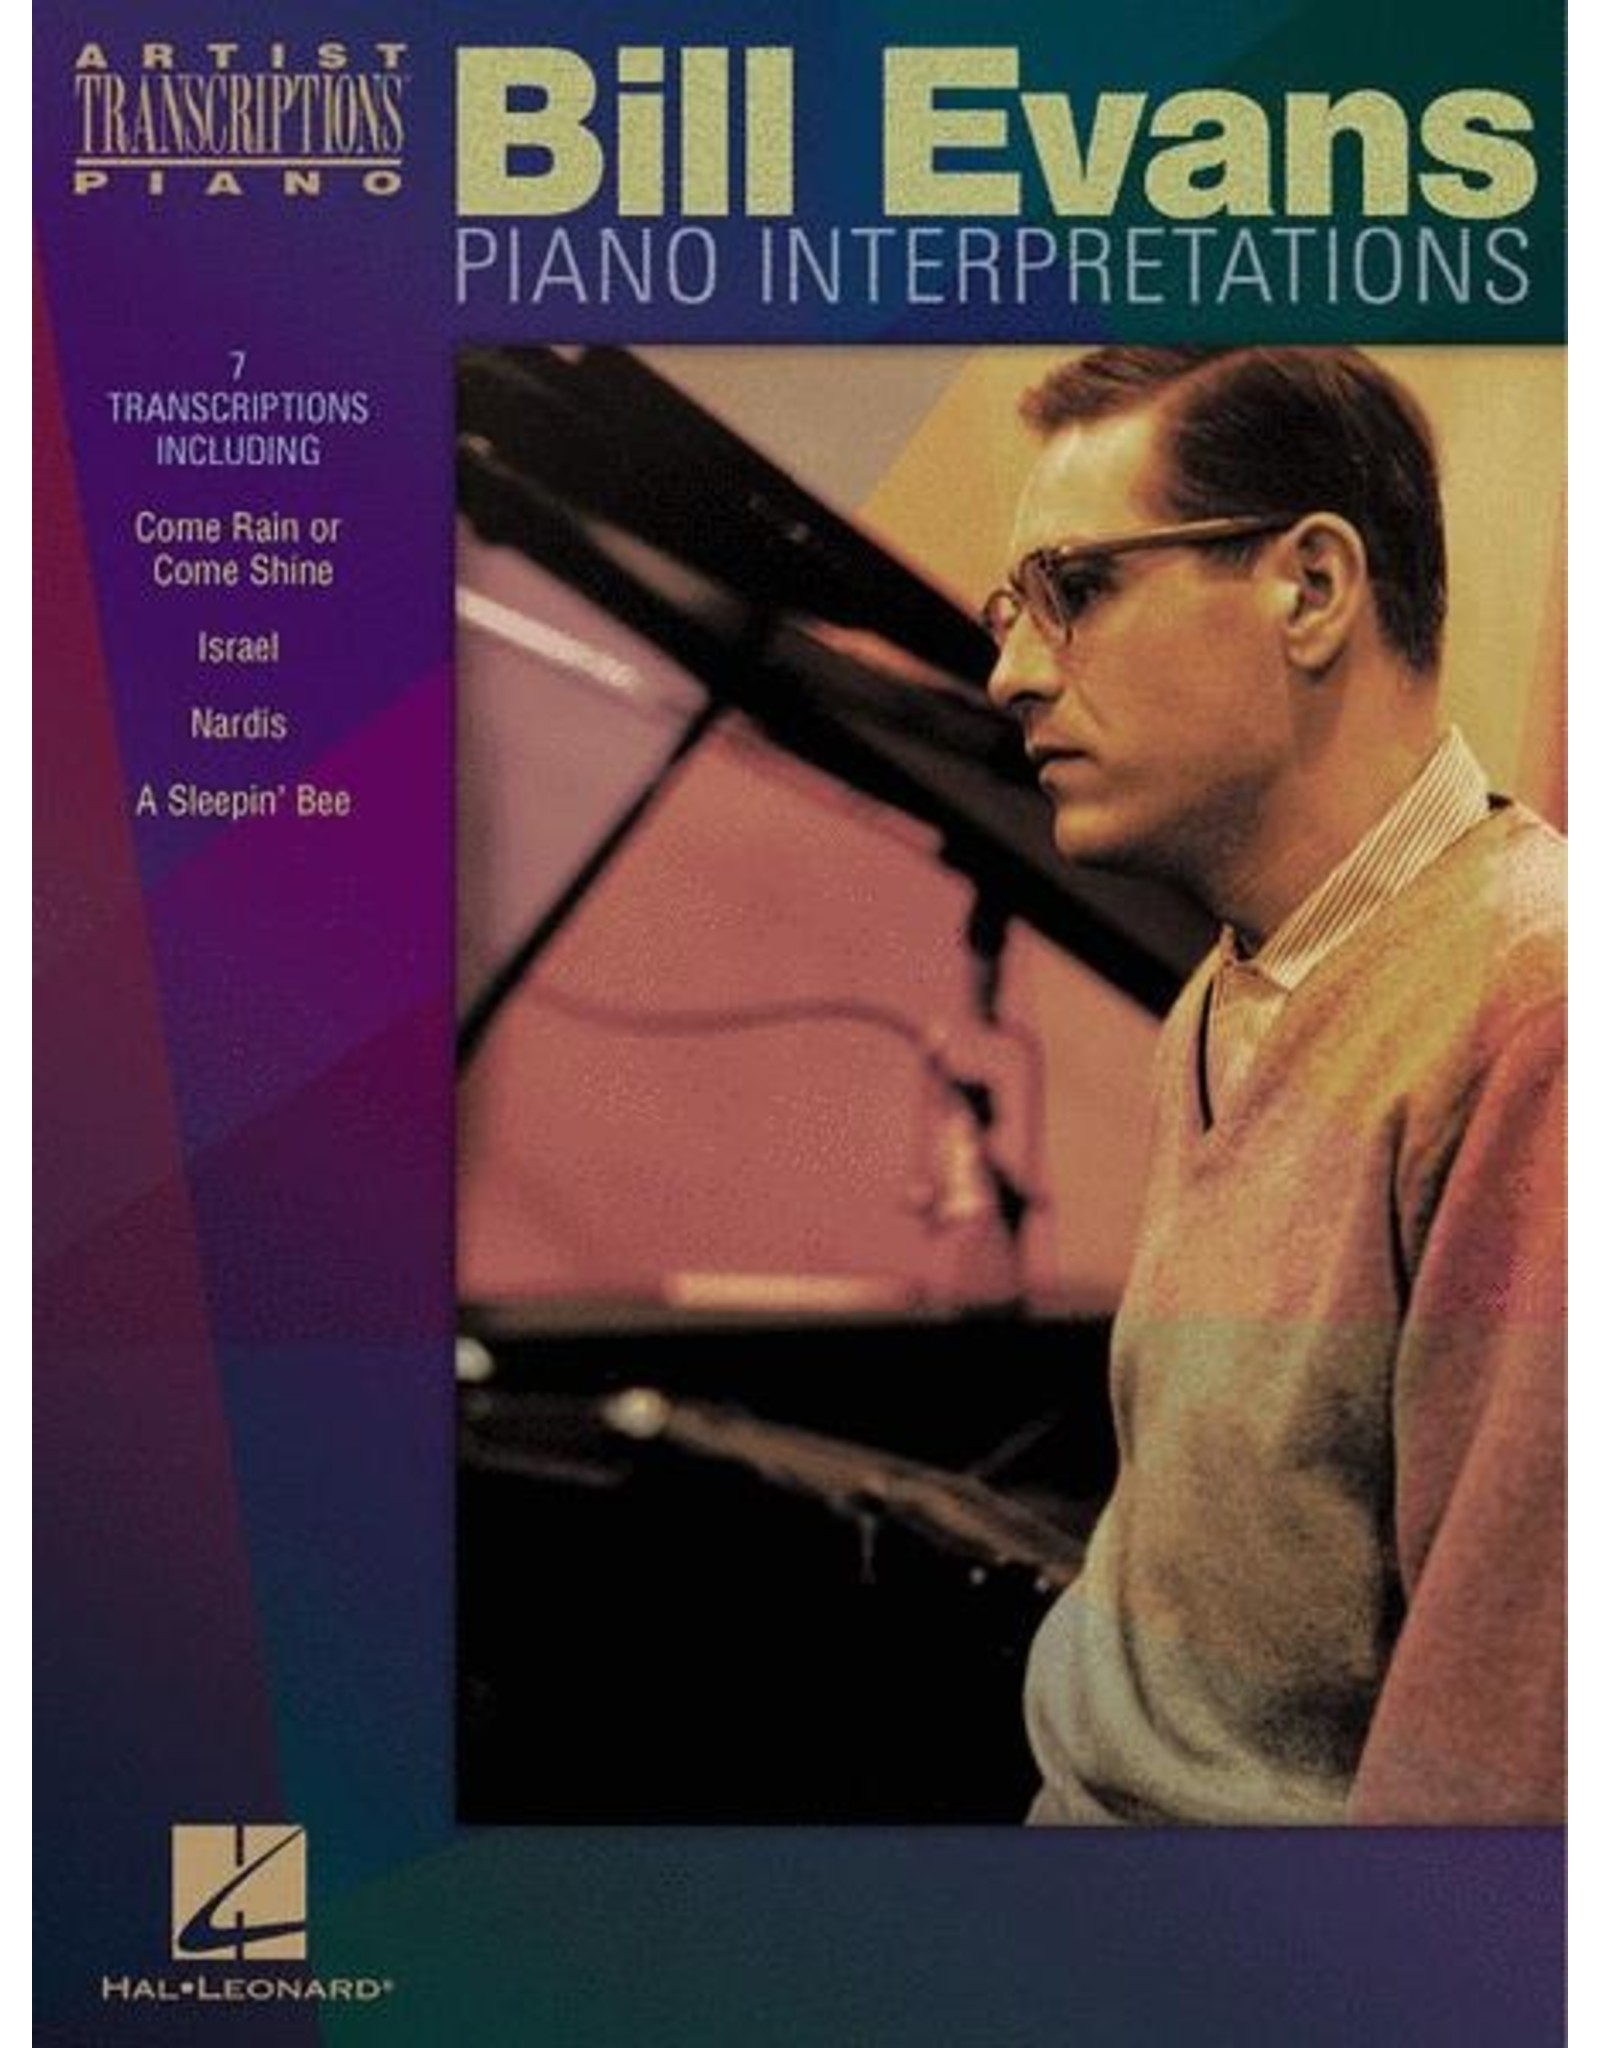 Hal Leonard Bill Evans - Piano Interpretations Piano Transcriptions Artist Transcriptions Artist Transcriptions Piano Transcriptions